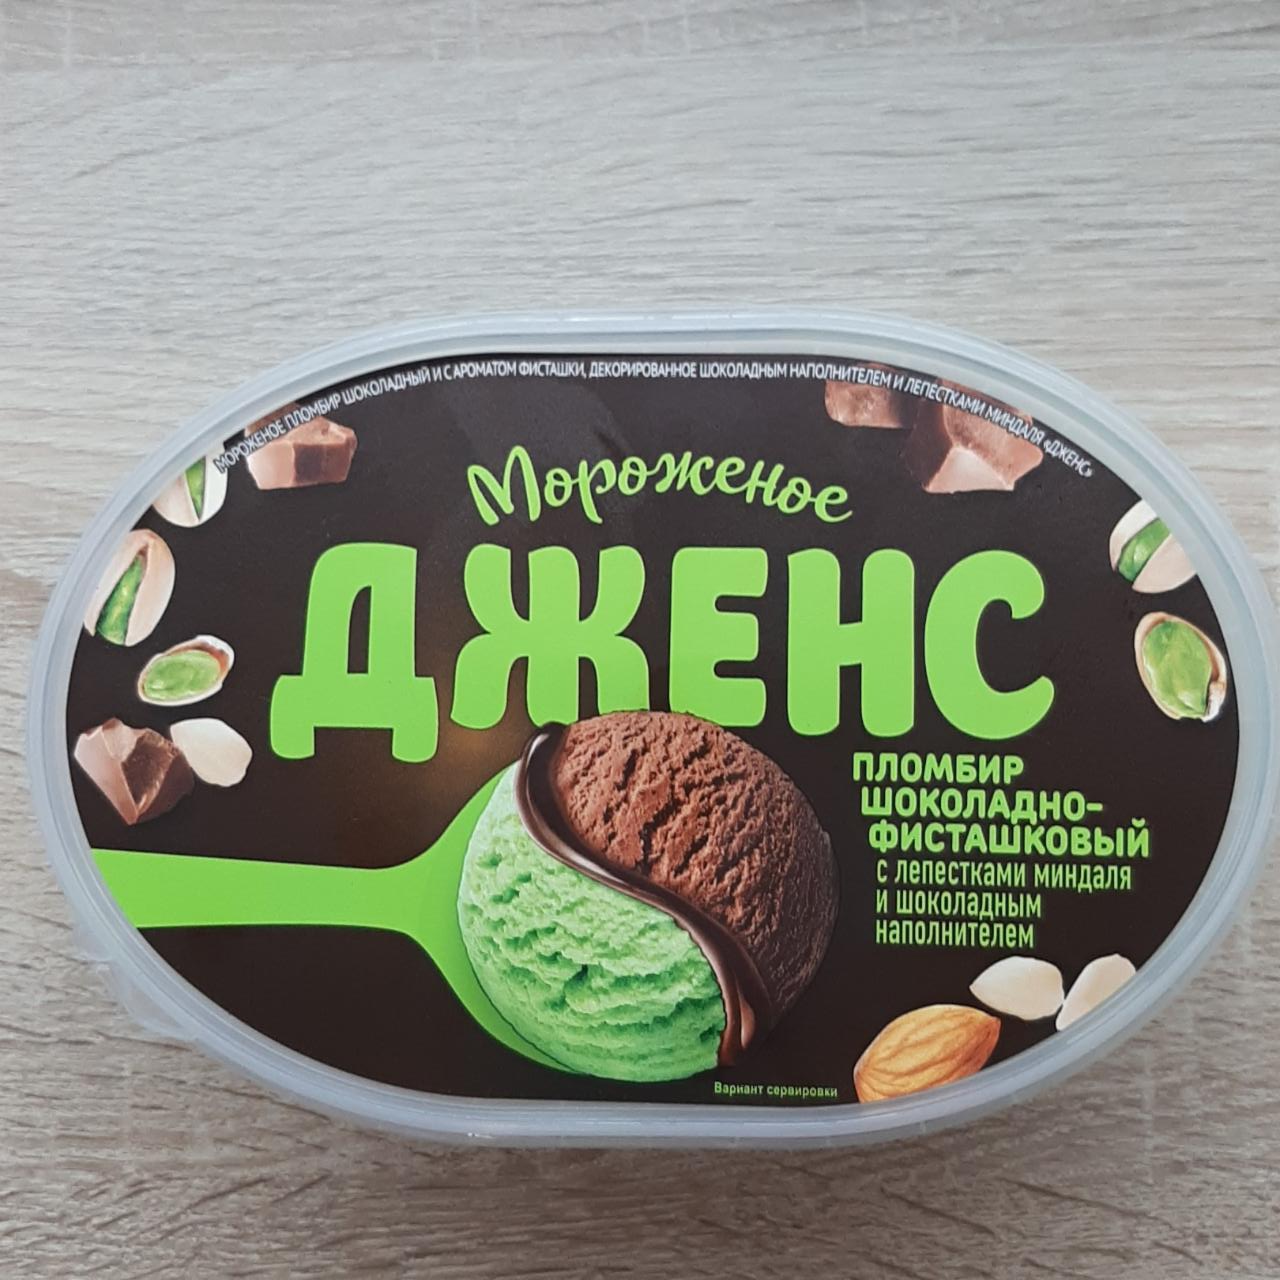 Фото - Мороженое Дженс пломбир шоколадно-фисташковый Новосибхолод